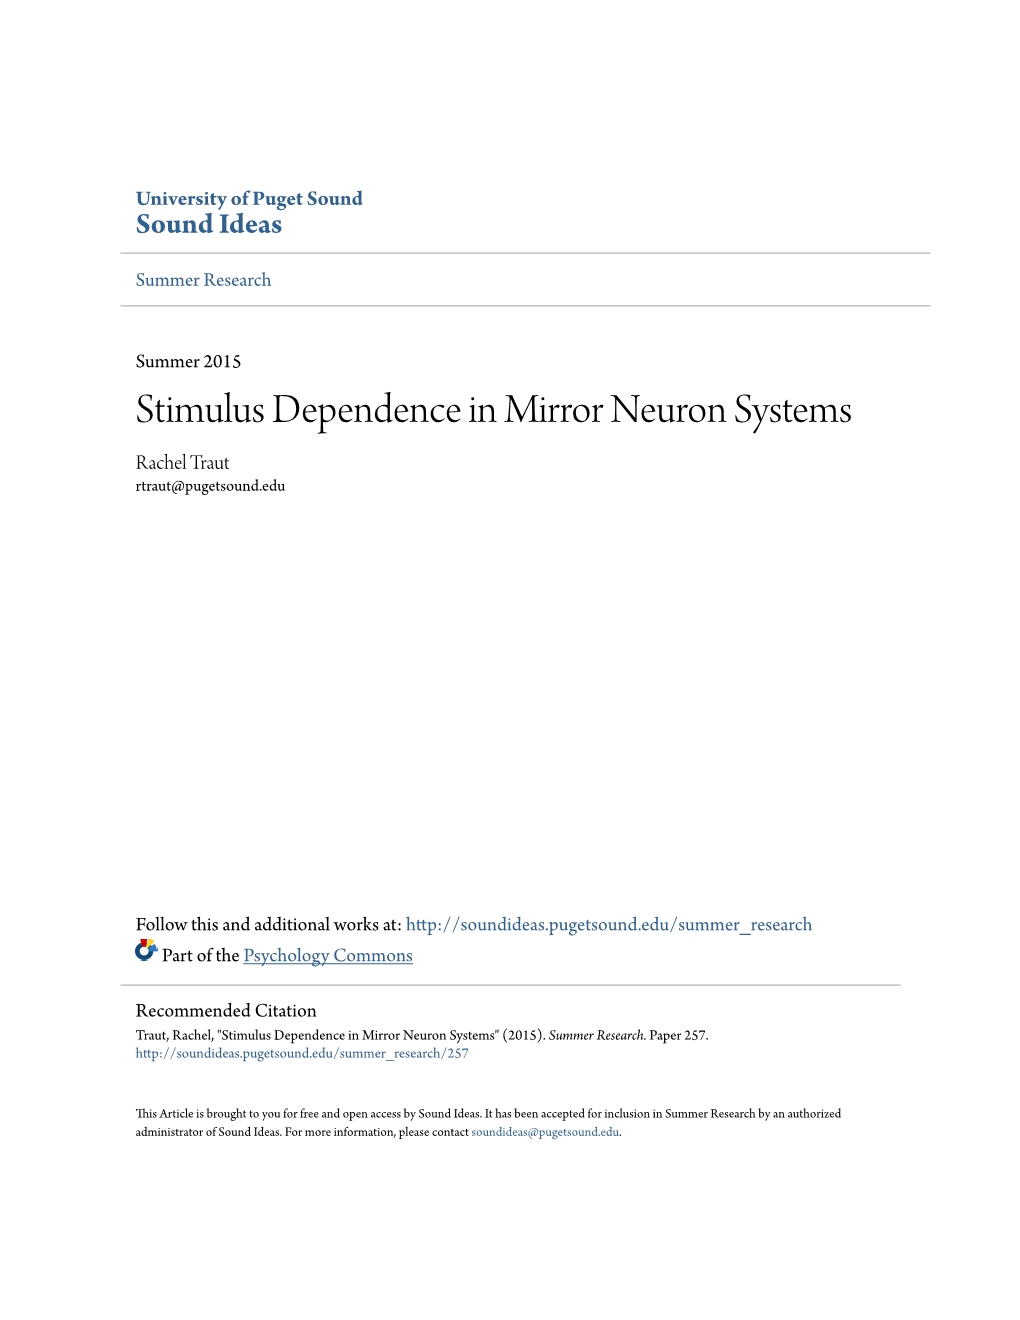 Stimulus Dependence in Mirror Neuron Systems Rachel Traut Rtraut@Pugetsound.Edu